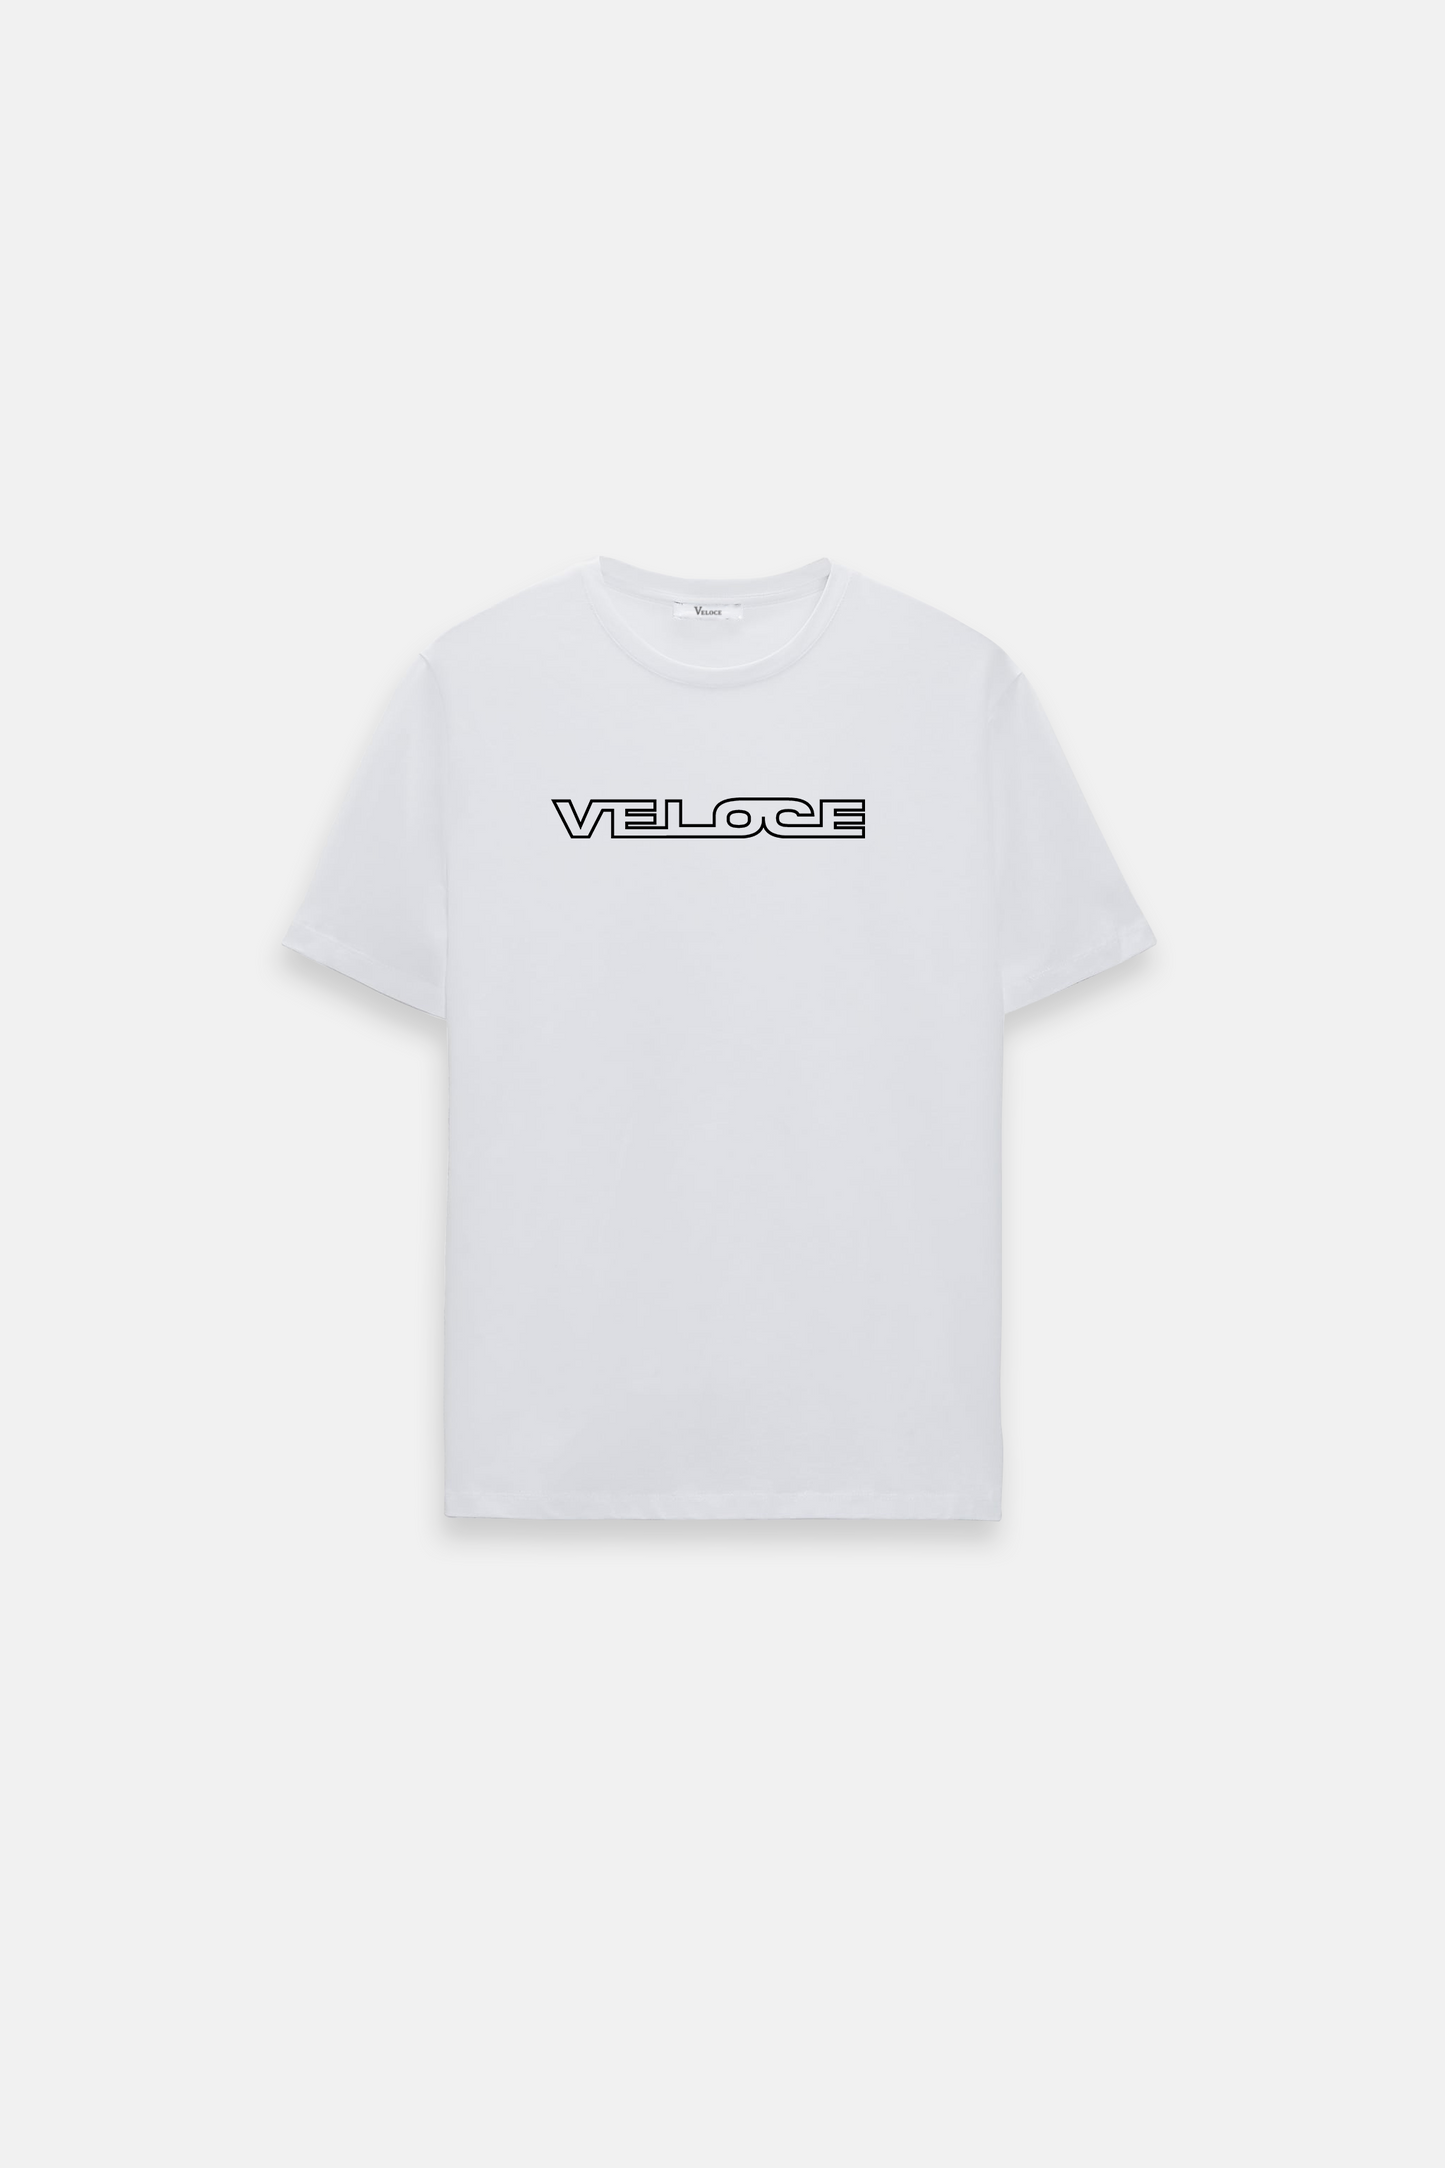 Veloce Futura T-Shirt - White